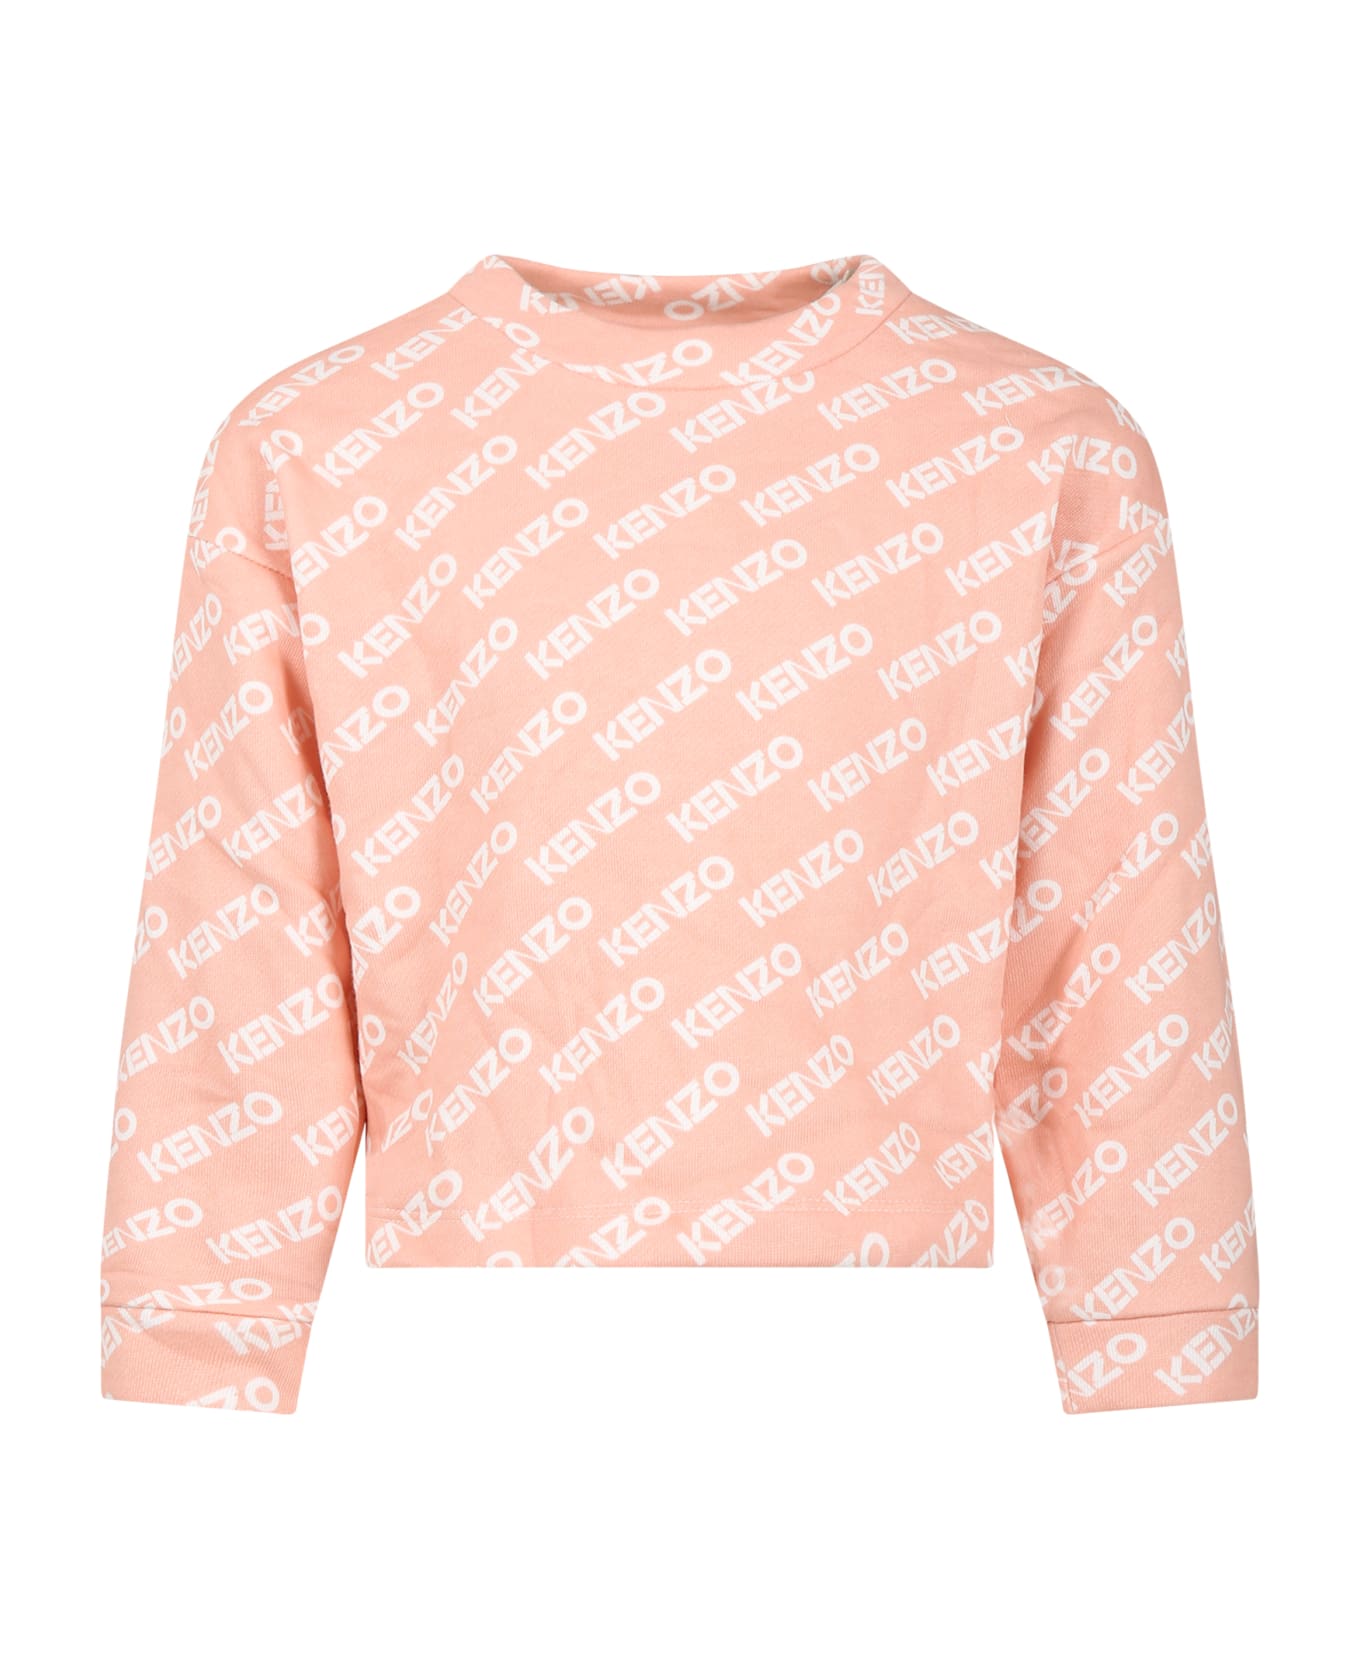 Kenzo Kids Pink Sweatshirt For Girl With Logo - Pink